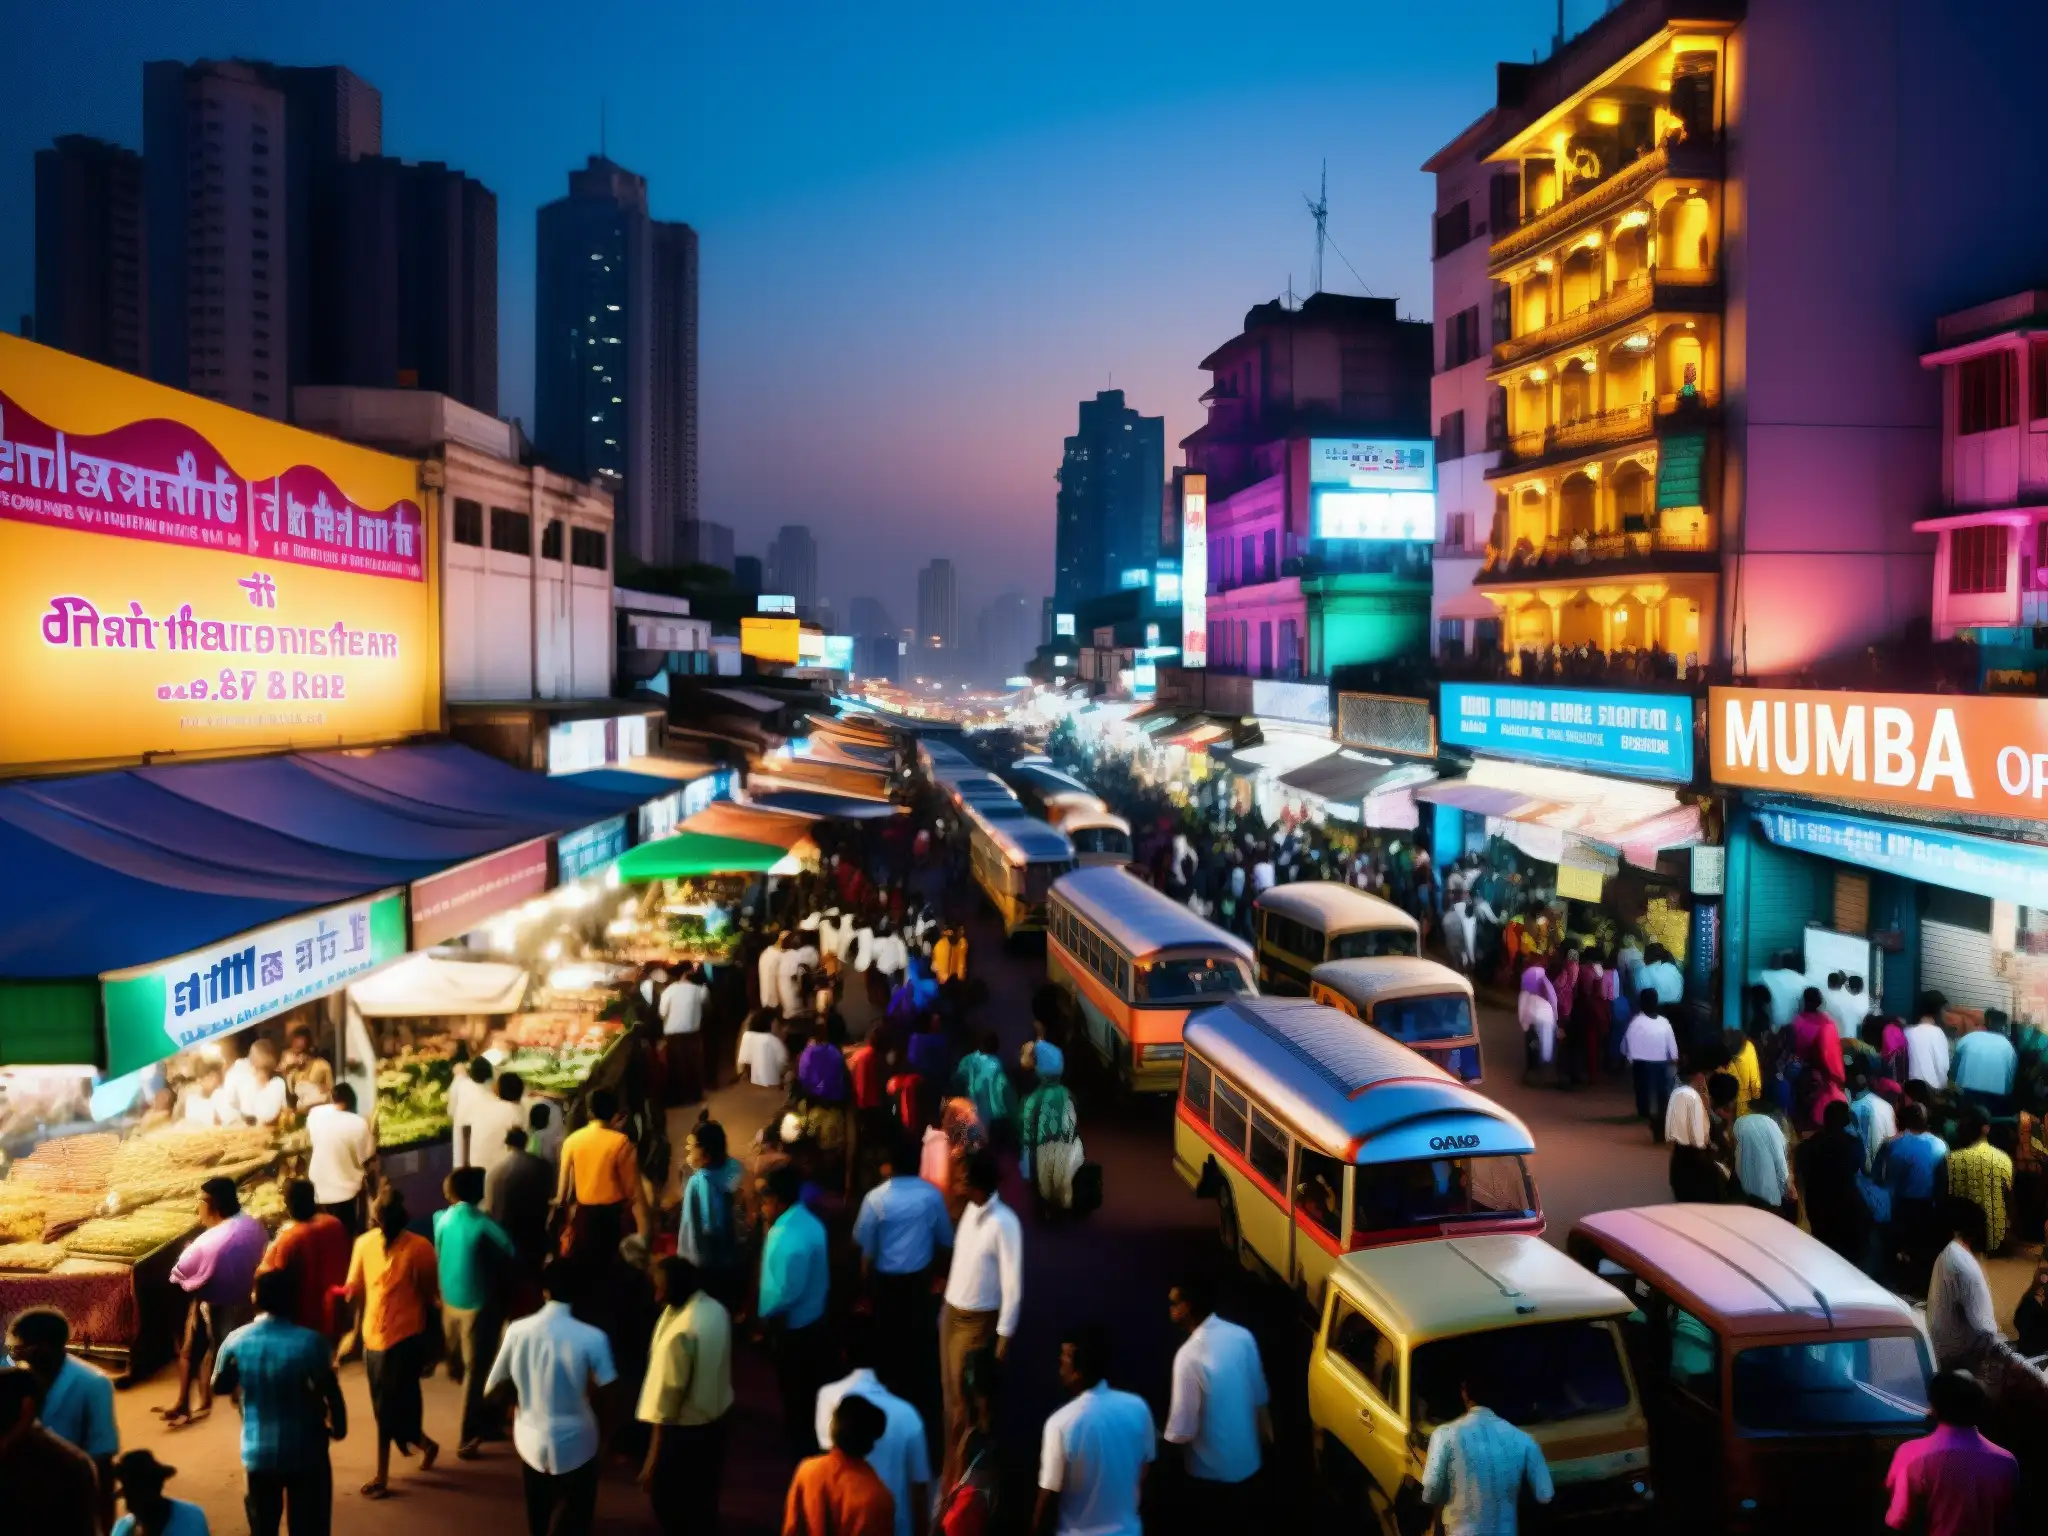 Misterios y leyendas urbanas de la India: vibrante vida nocturna en las bulliciosas calles de Mumbai, iluminadas por neones